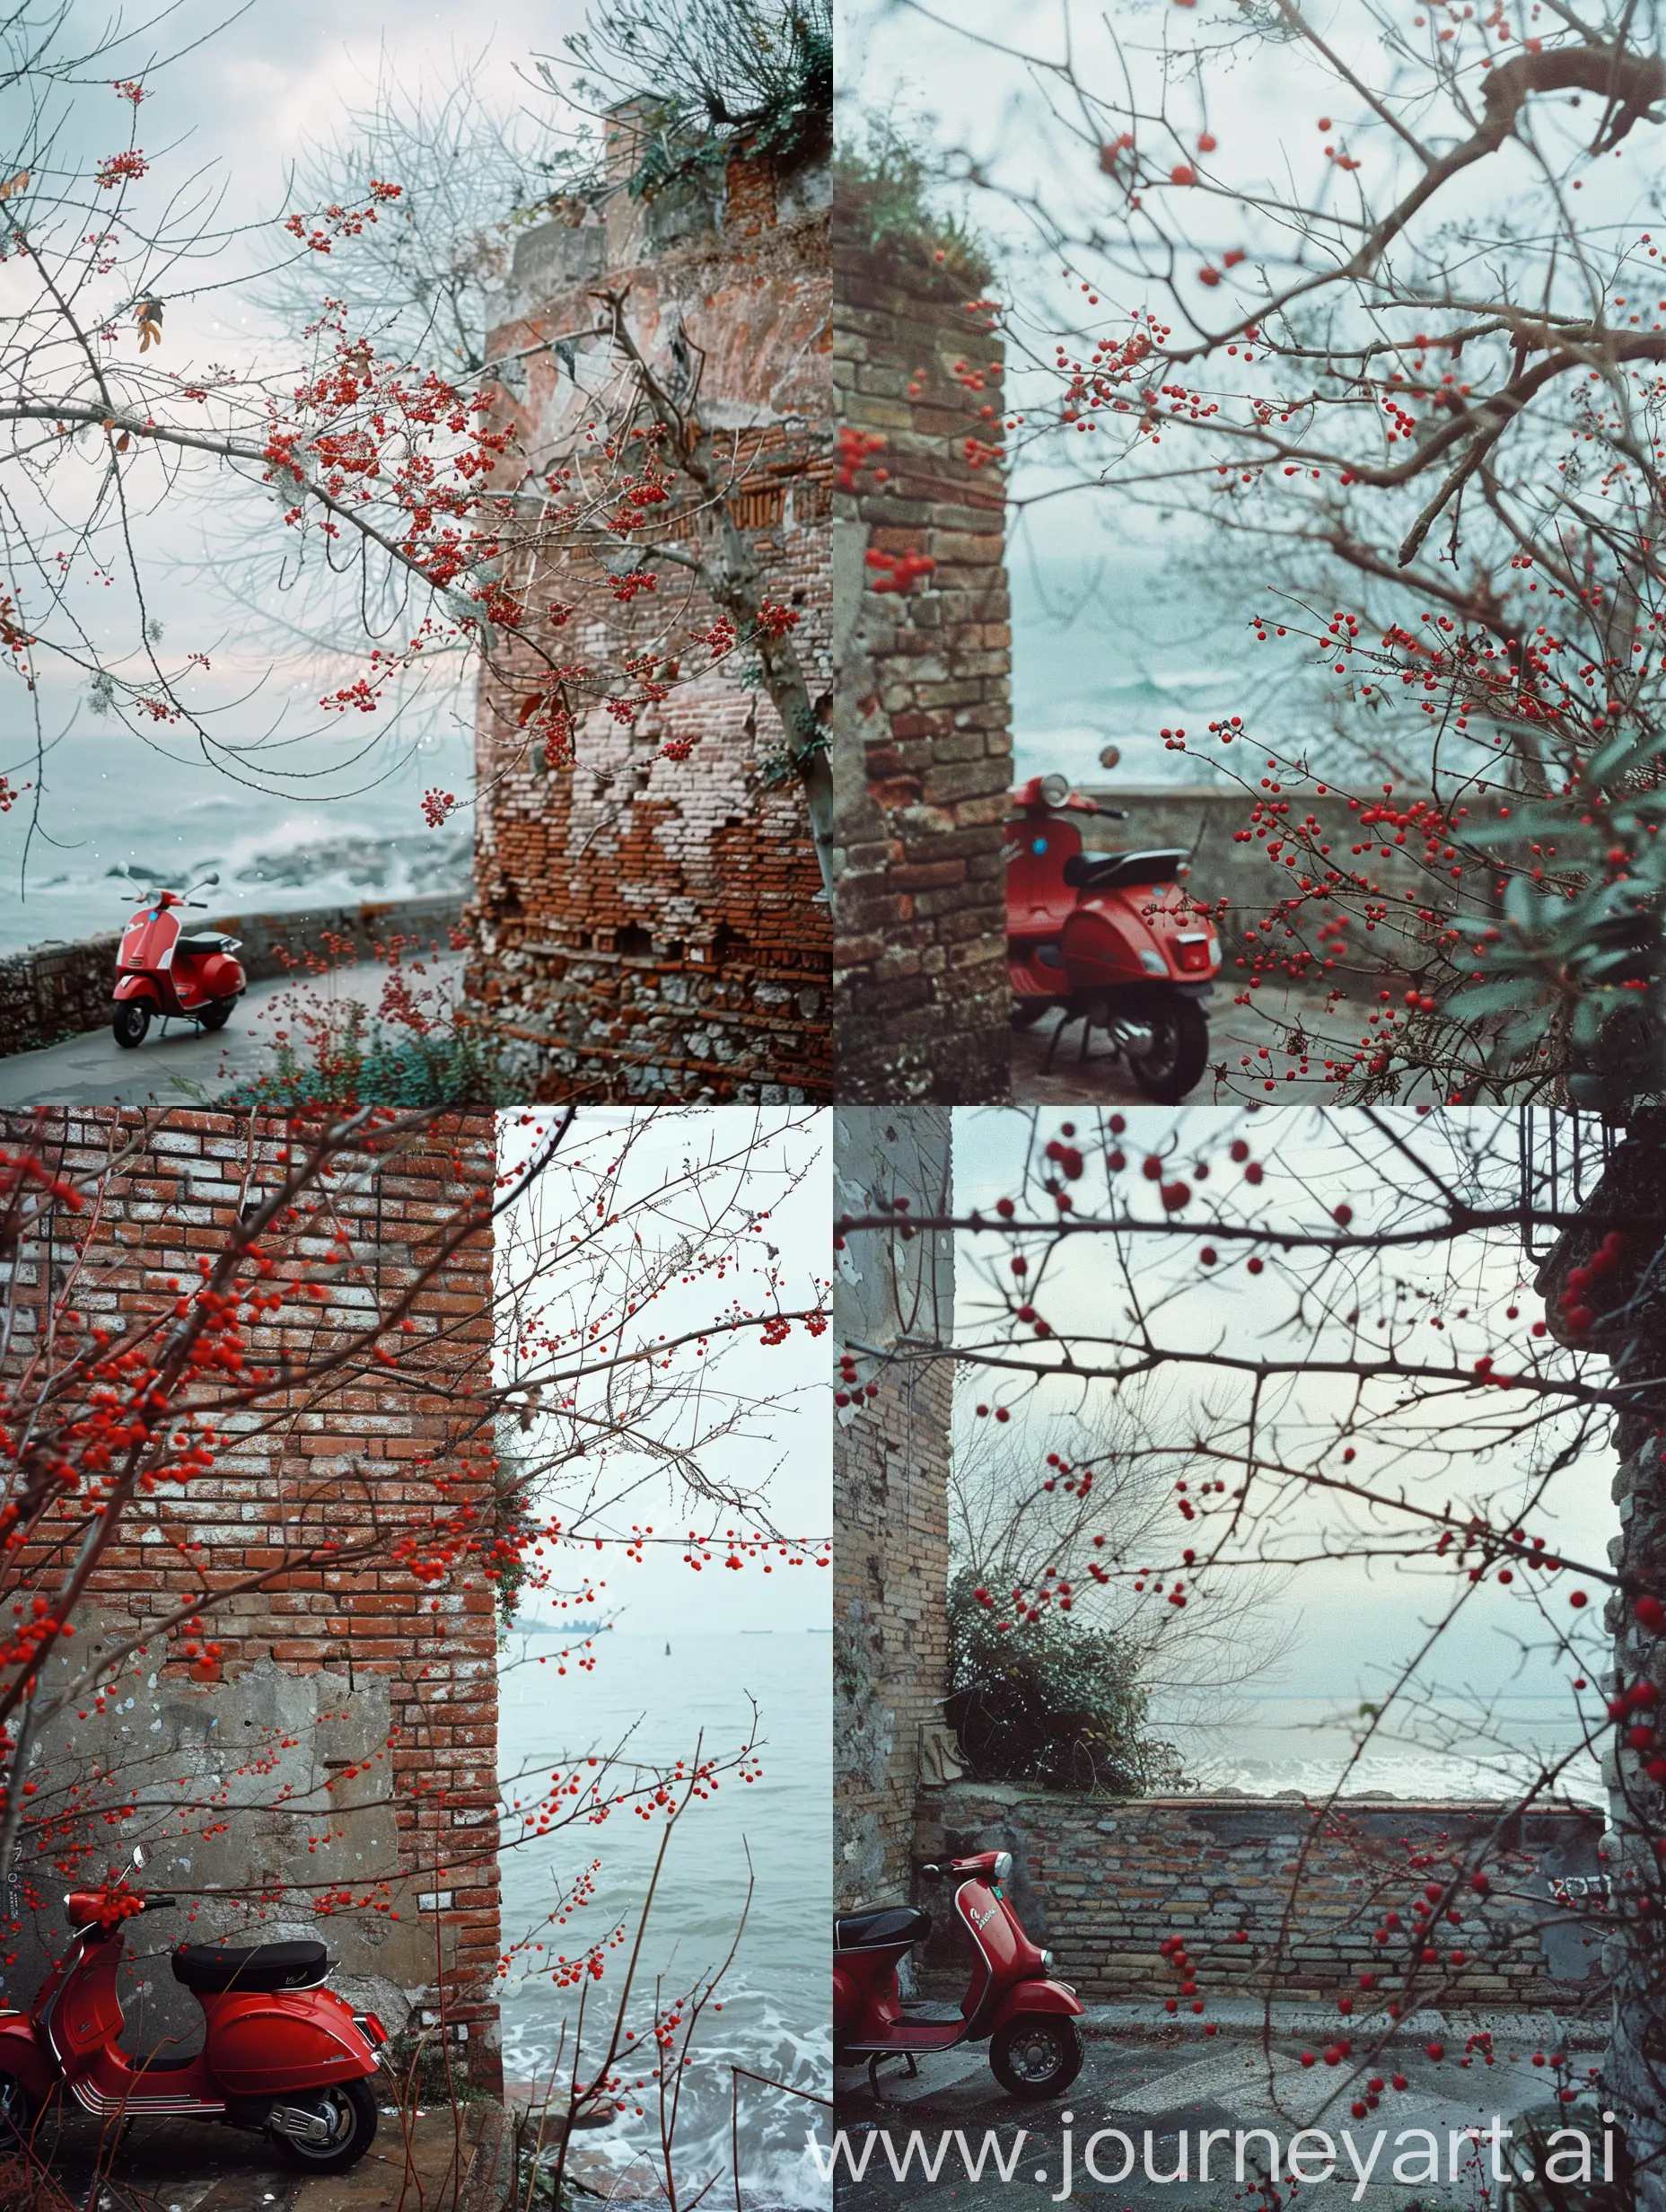 широкоформатная фотография старой кирпичной стены где-то на улочках Италии, в левом углу стоит красная Vespa, на переднем плане высокие ветки с красным  ягодами, где-то вдалеке бушует море, photo taken with provia, 1/250s, f/2.8, ISO100